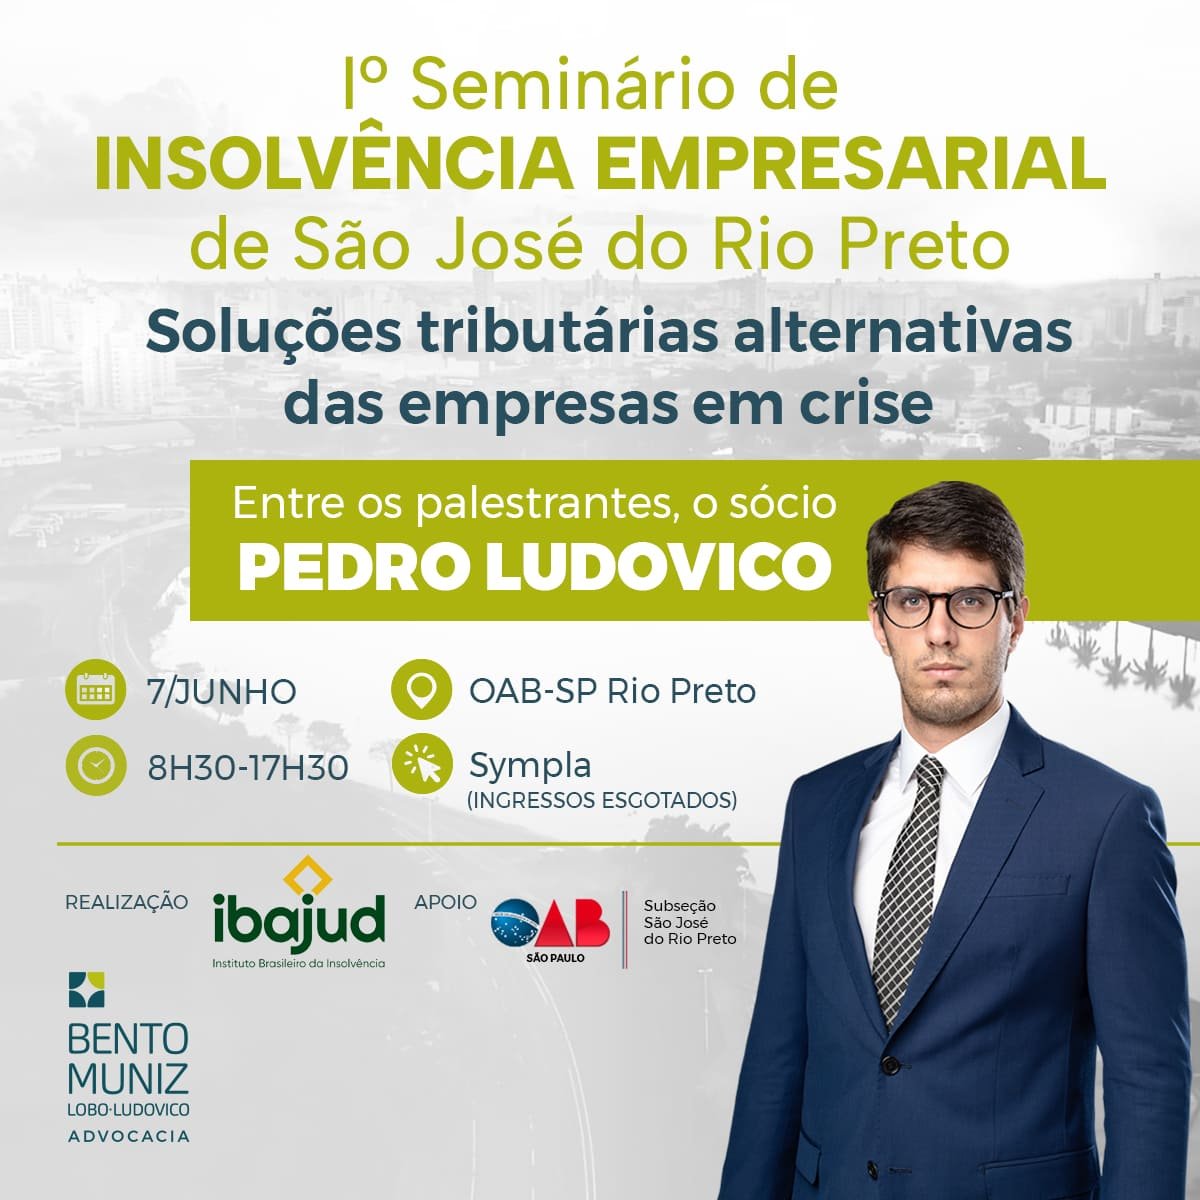 1º Seminário de INSOLVÊNCIA EMPRESARIAL de São José do Rio Preto